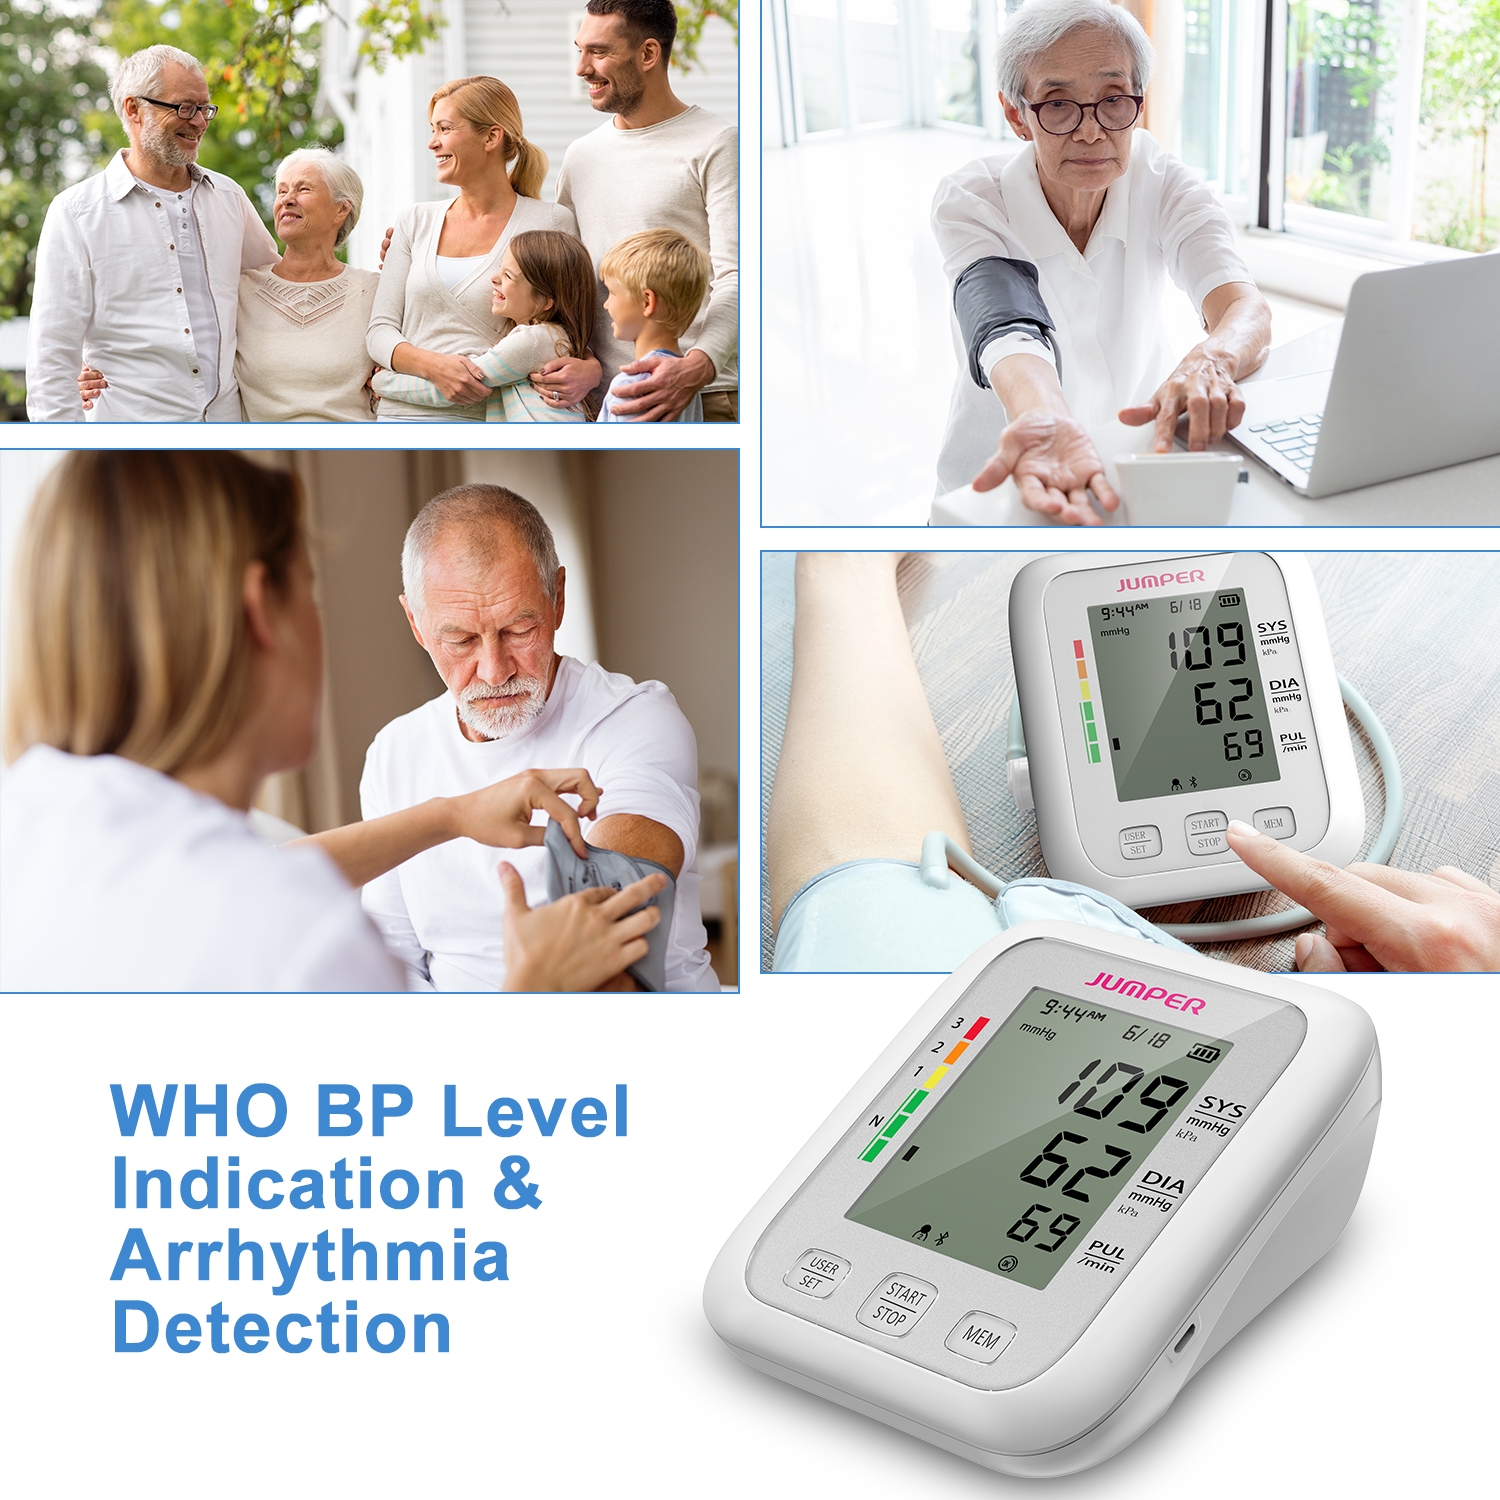 Thiết kế máy đo huyết áp dễ sử dụng đặc biệt cho người lớn tuổi